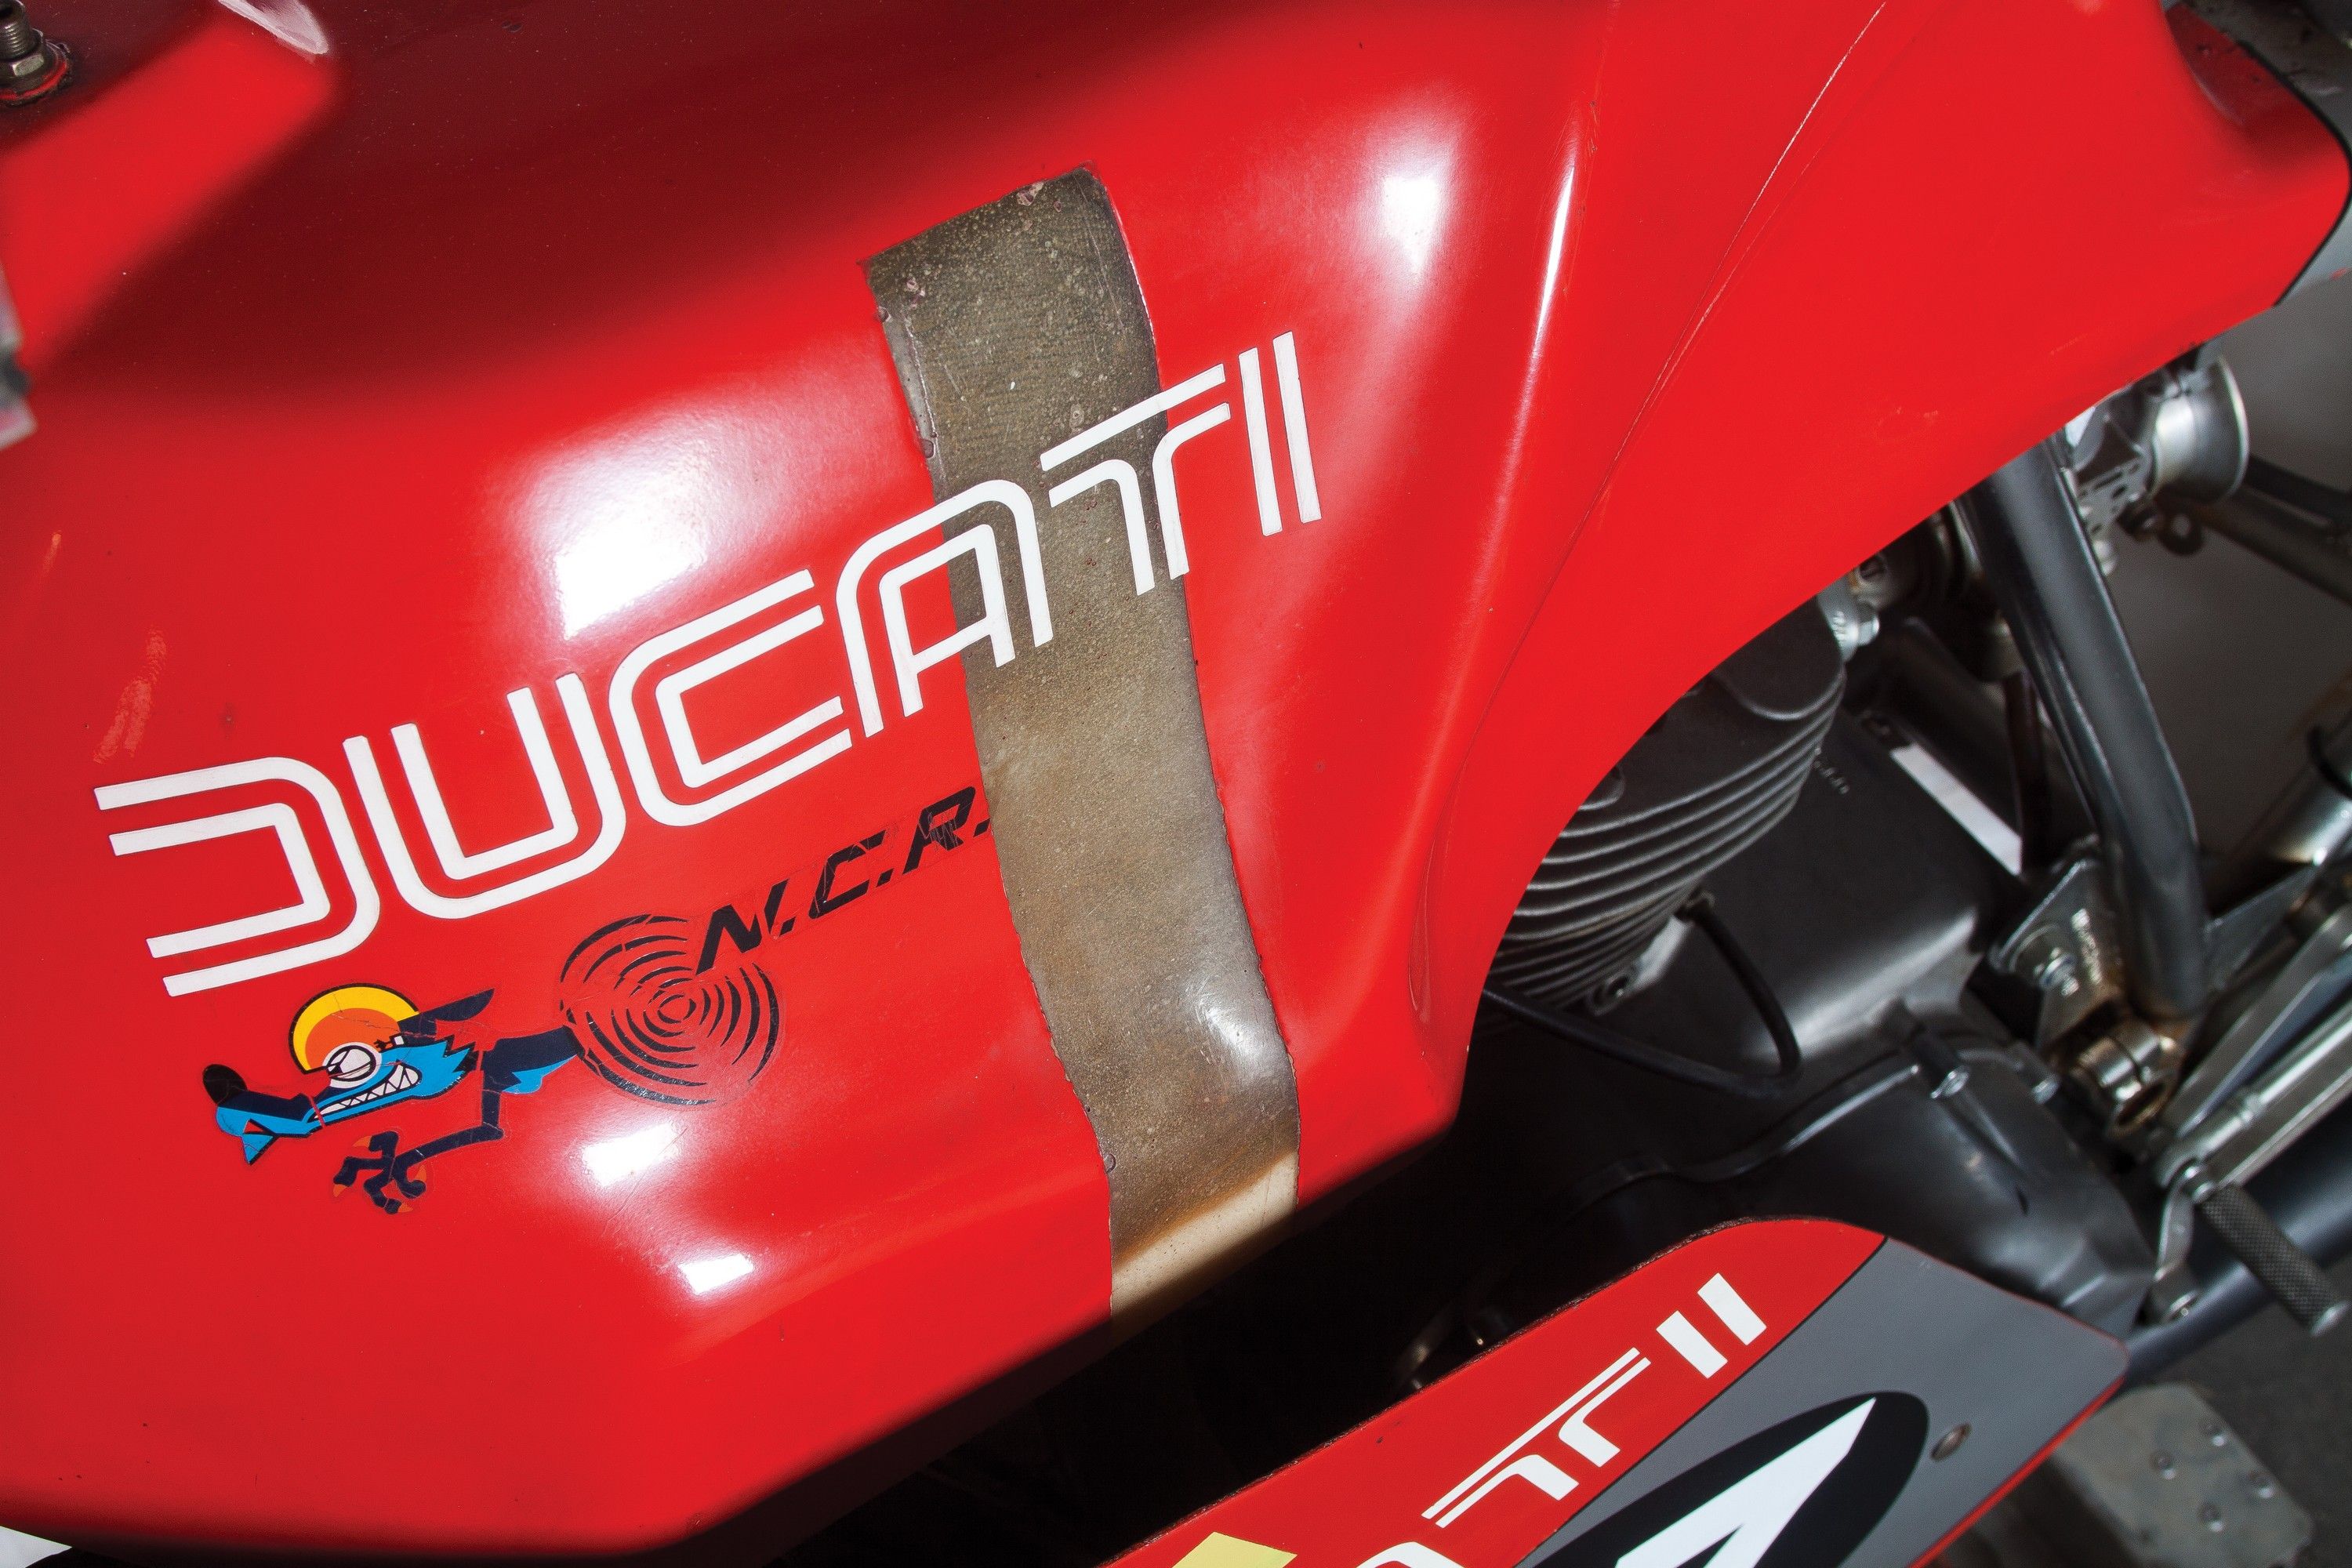 1980 Ducati 860 Corsa